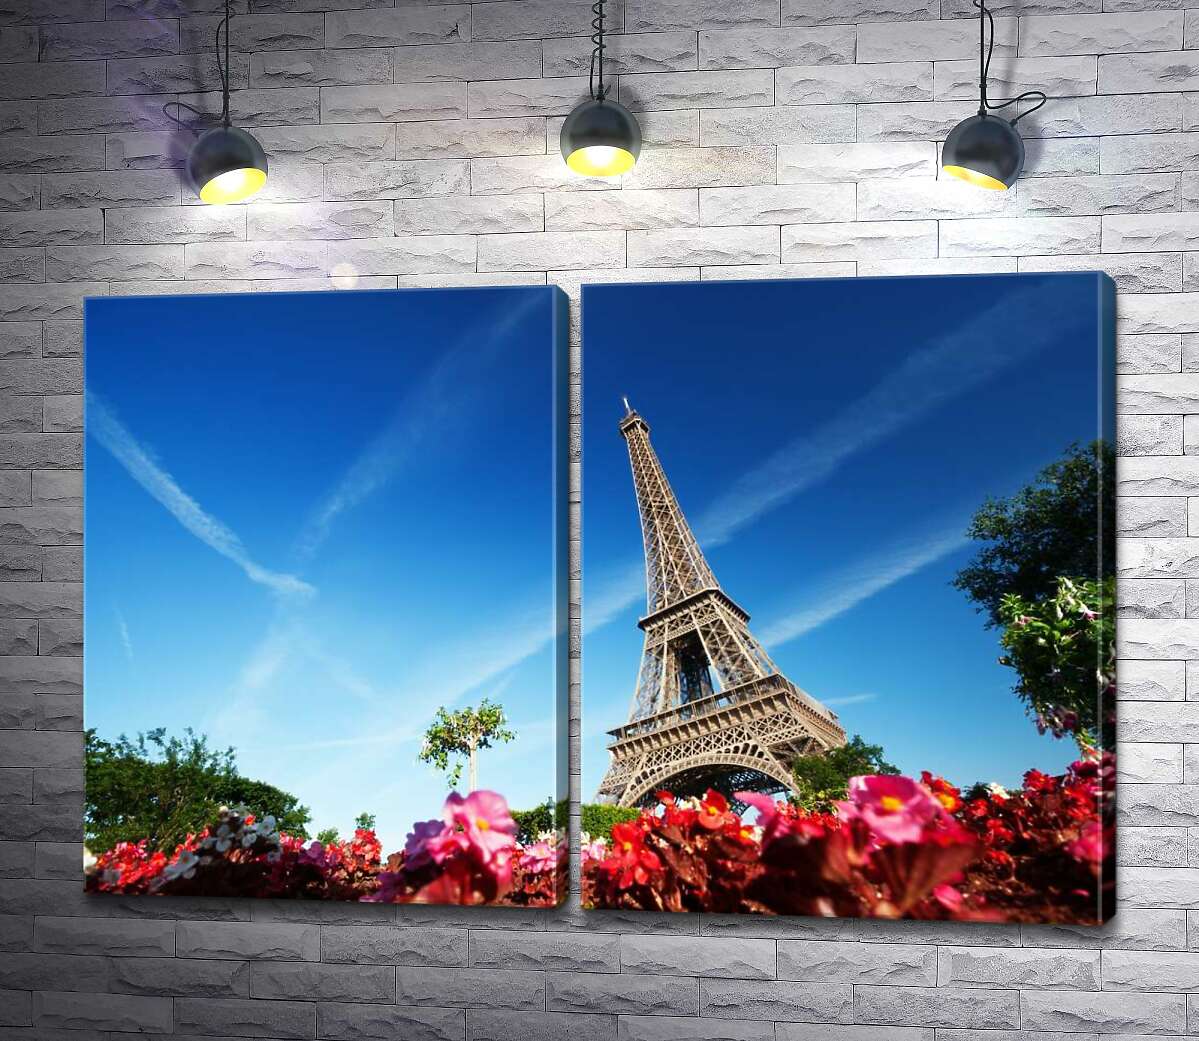 модульная картина Эйфелева башня возвышается над цветником с бегониями